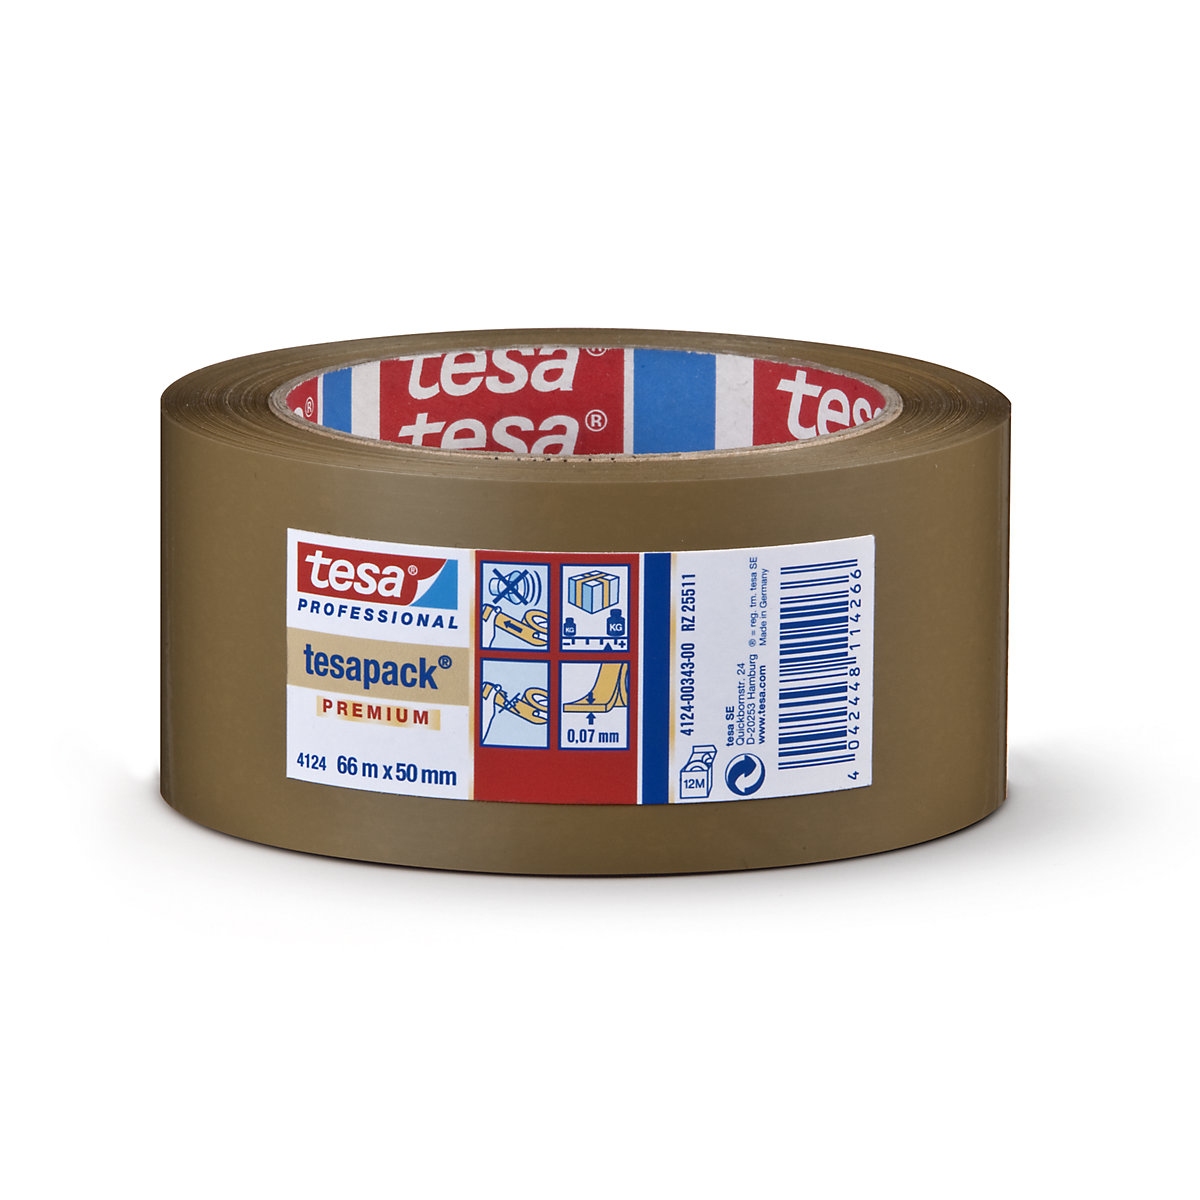 Cinta de embalaje de PVC – tesa, tesapack® 4124 Premium, UE 6 rollos, marrón, anchura de cinta 50 mm-2